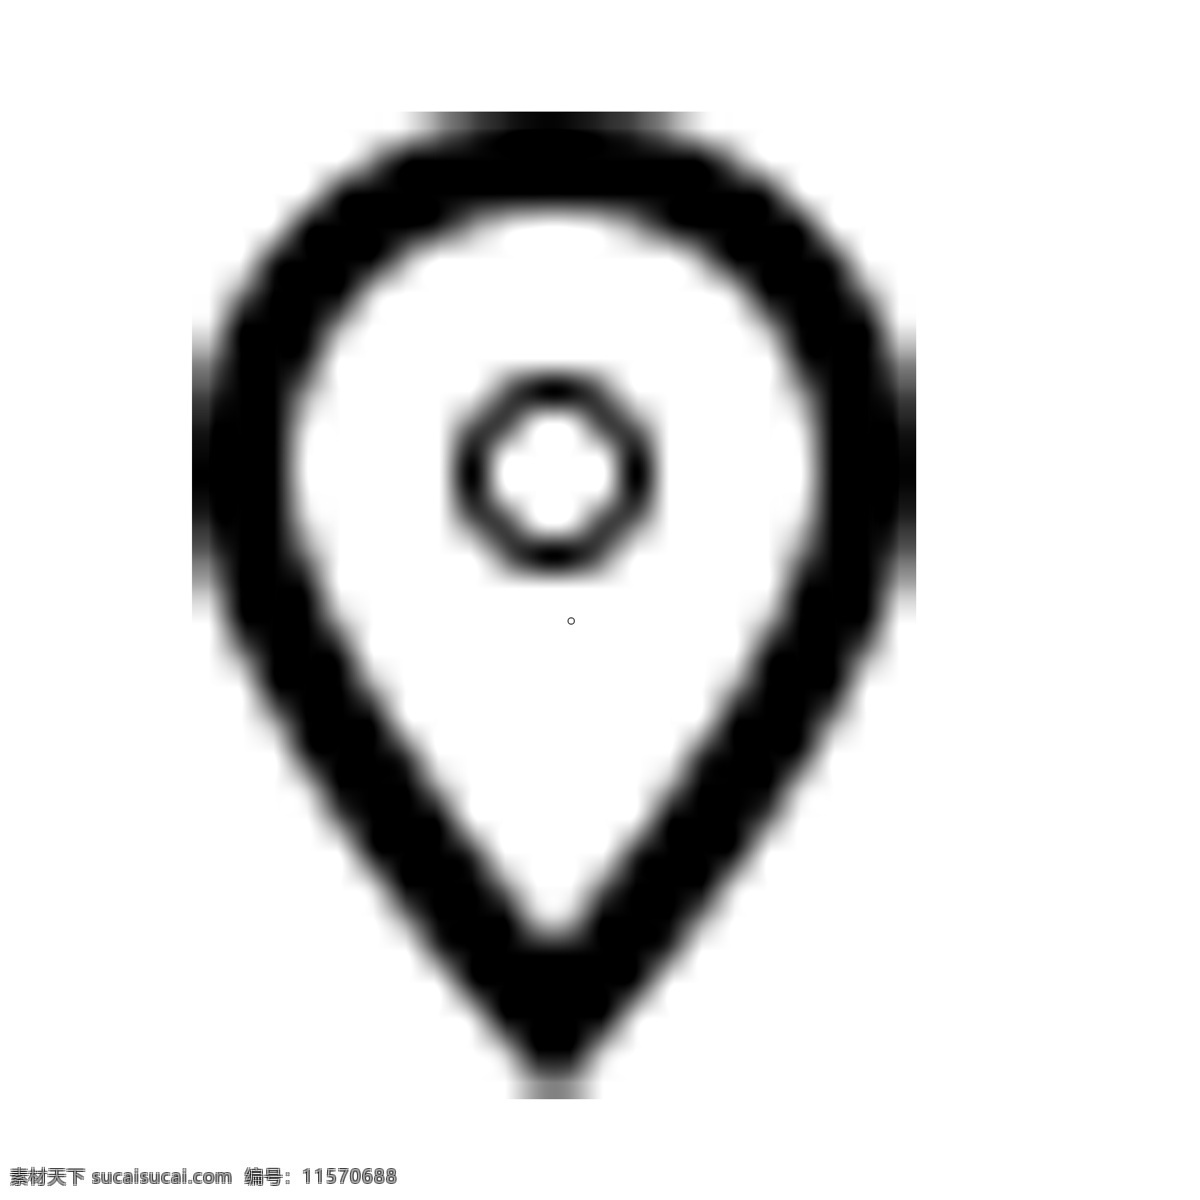 导航图标 位置 坐标 扁平化ui ui图标 手机图标 界面ui 网页ui h5图标